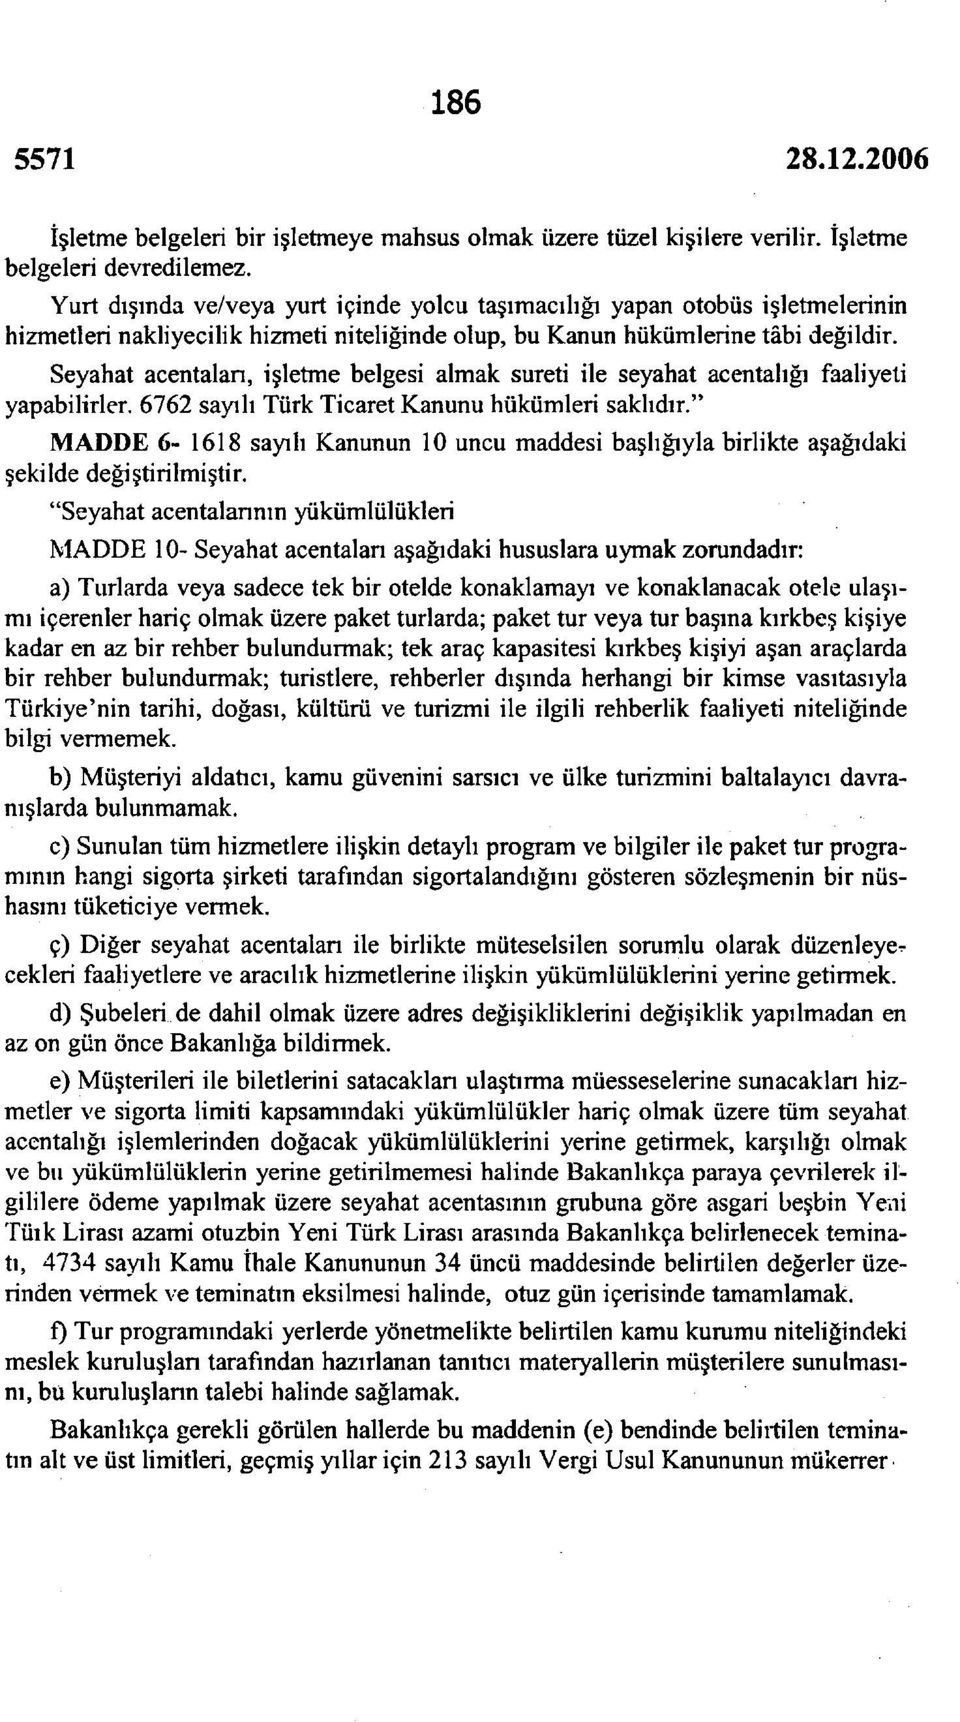 Seyahat acentalan, işletme belgesi almak sureti ile seyahat acentalığı faaliyeti yapabilirler. 6762 sayılı Türk Ticaret Kanunu hükümleri saklıdır.